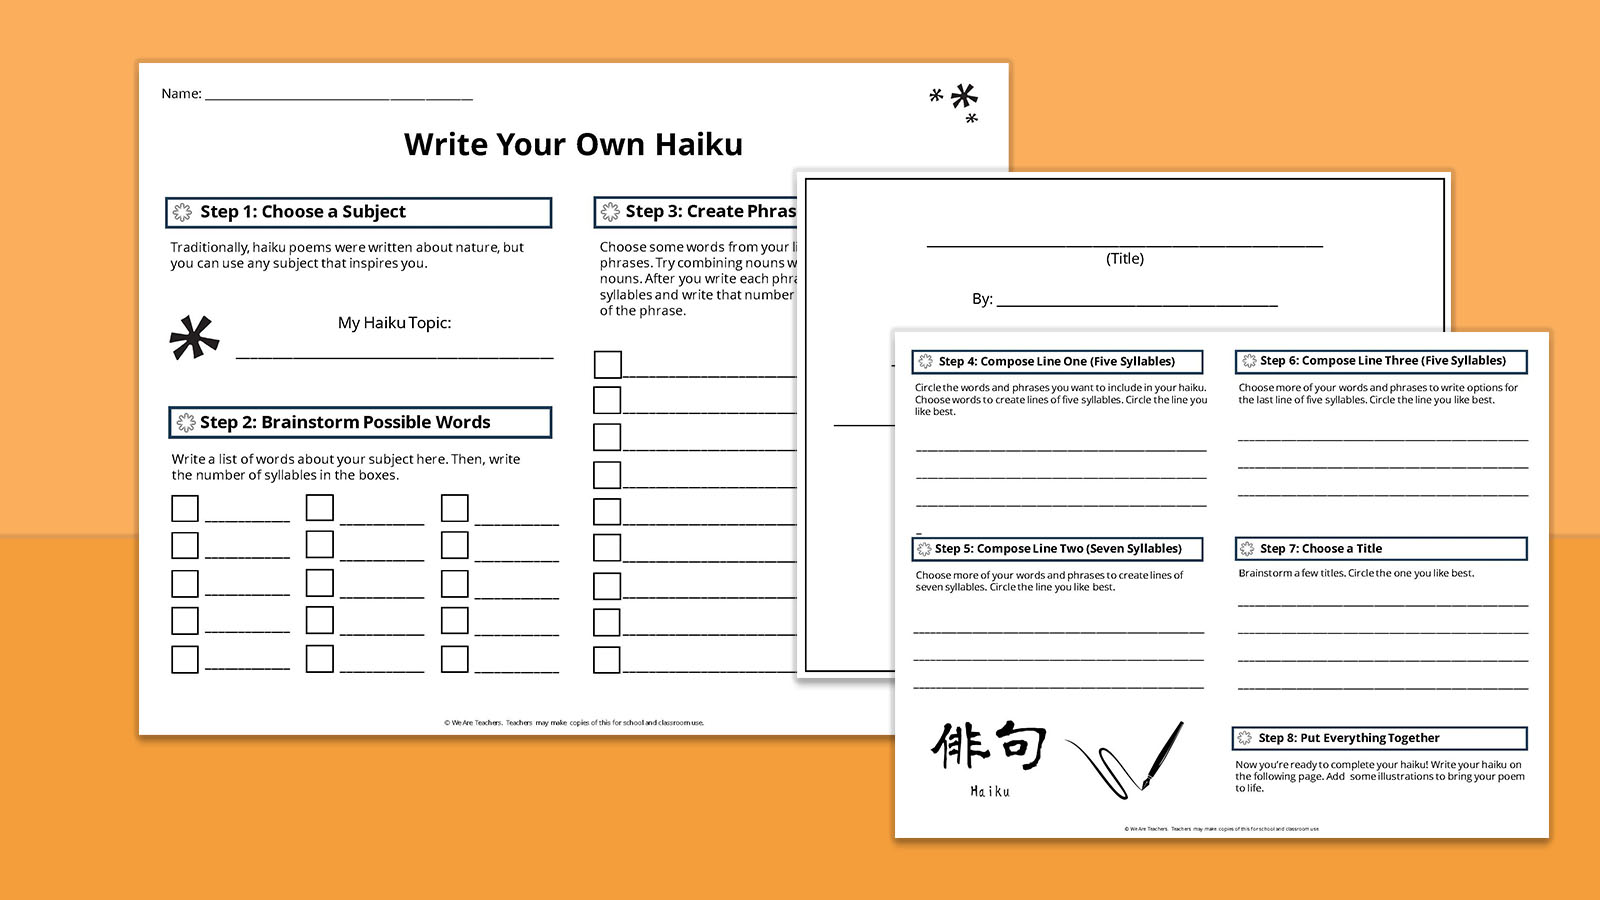 Image of haiku starter worksheets on orange background.